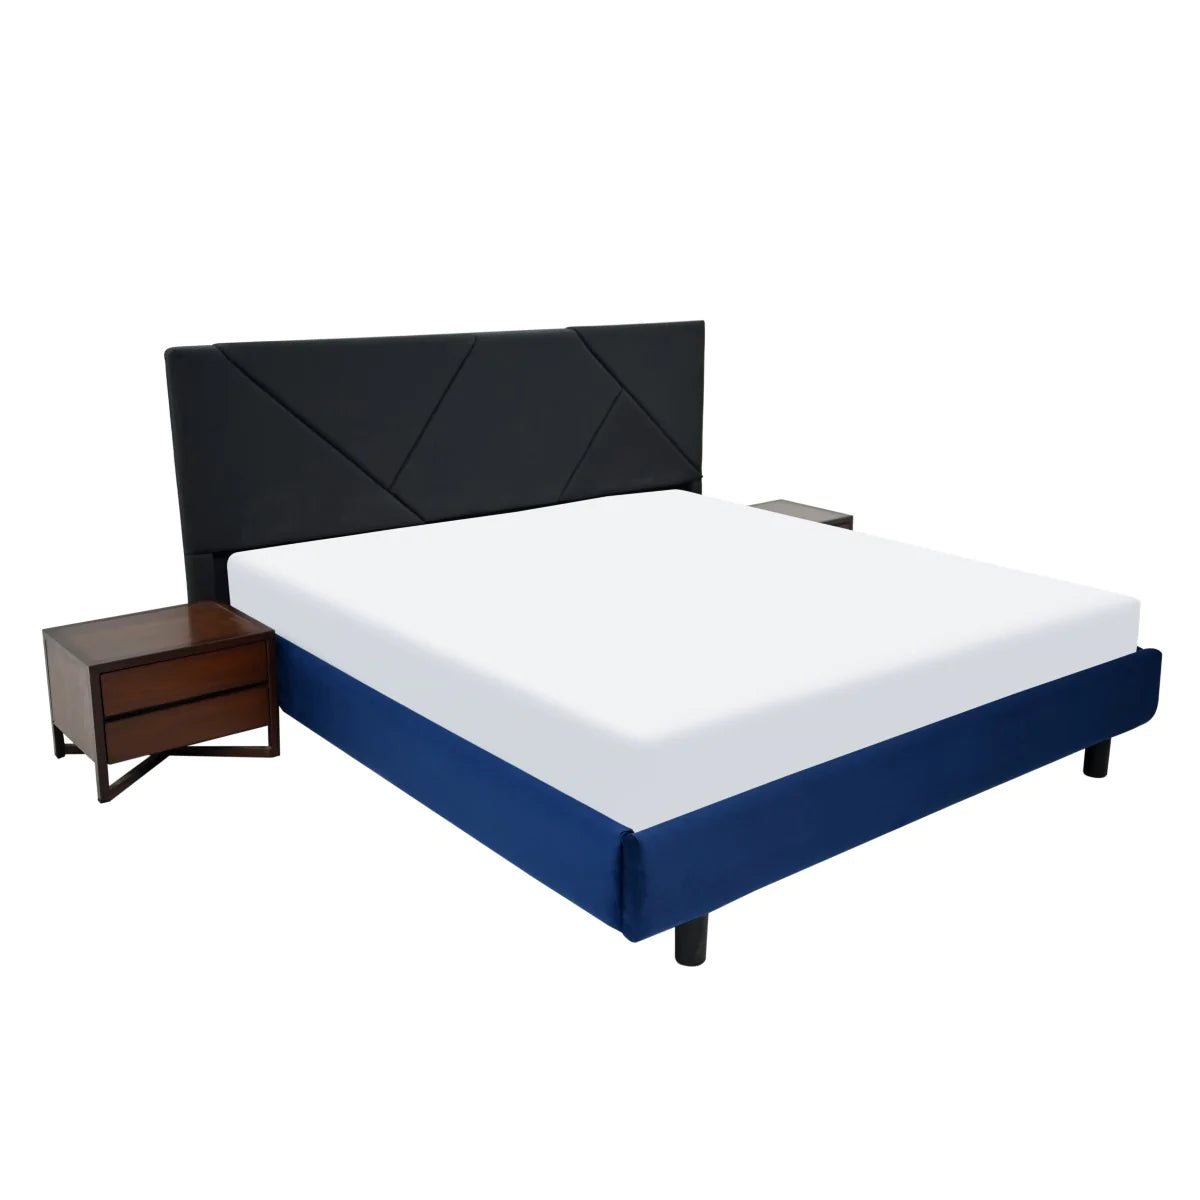 Sebastian - Bed + Dresser + (Rs. 40,000/- Gift Voucher)